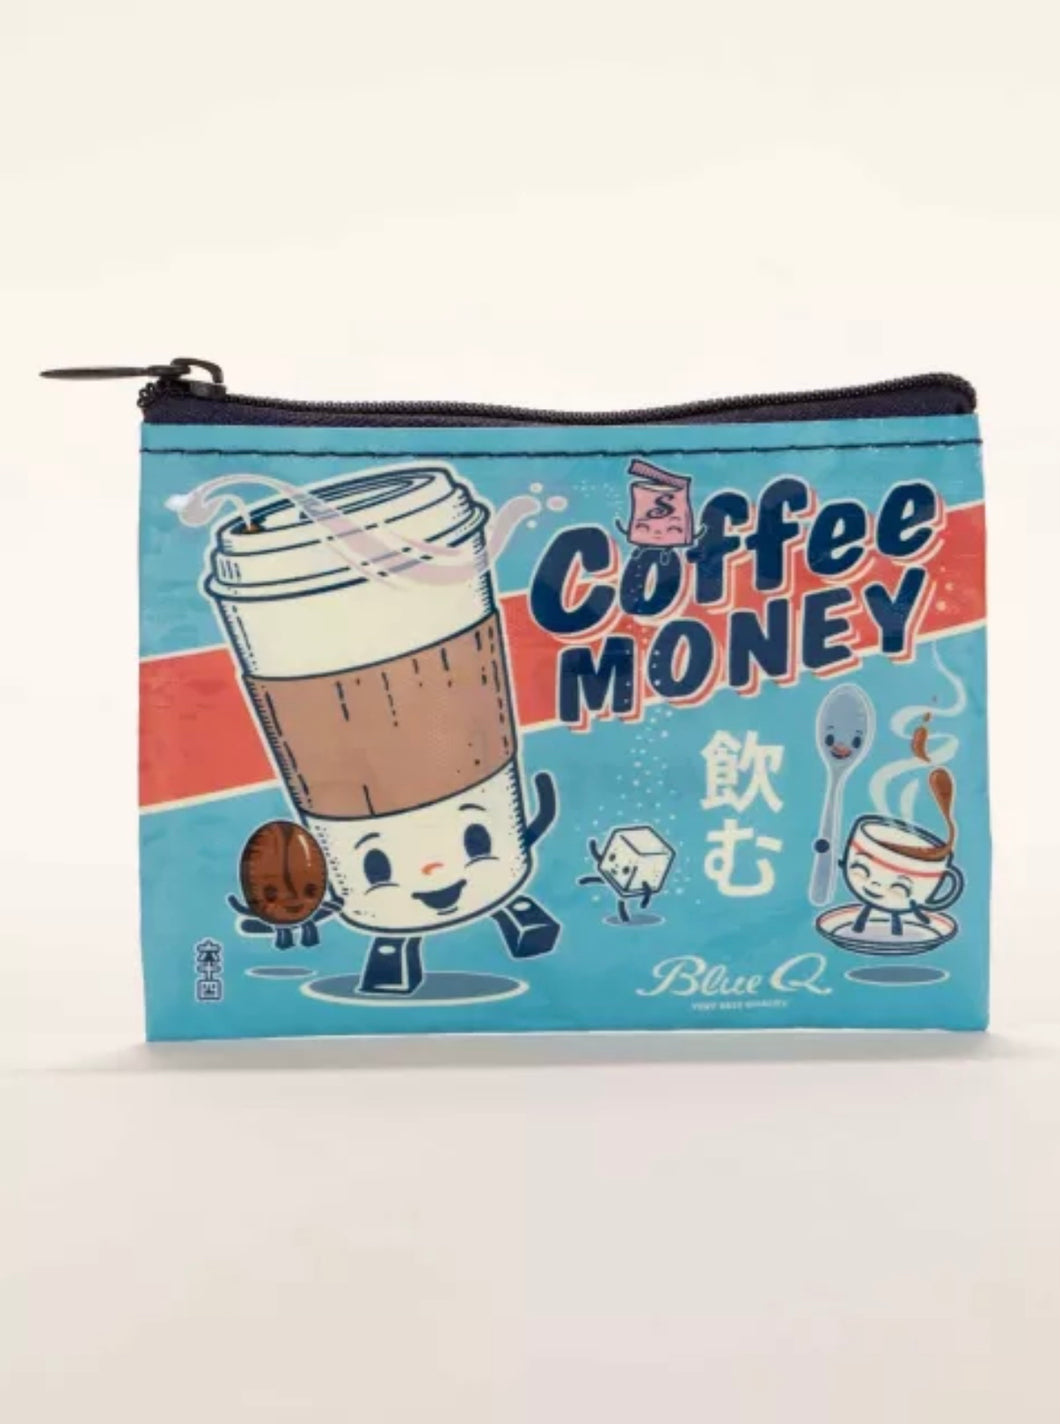 Coffee Money Coin purse by BlueQ